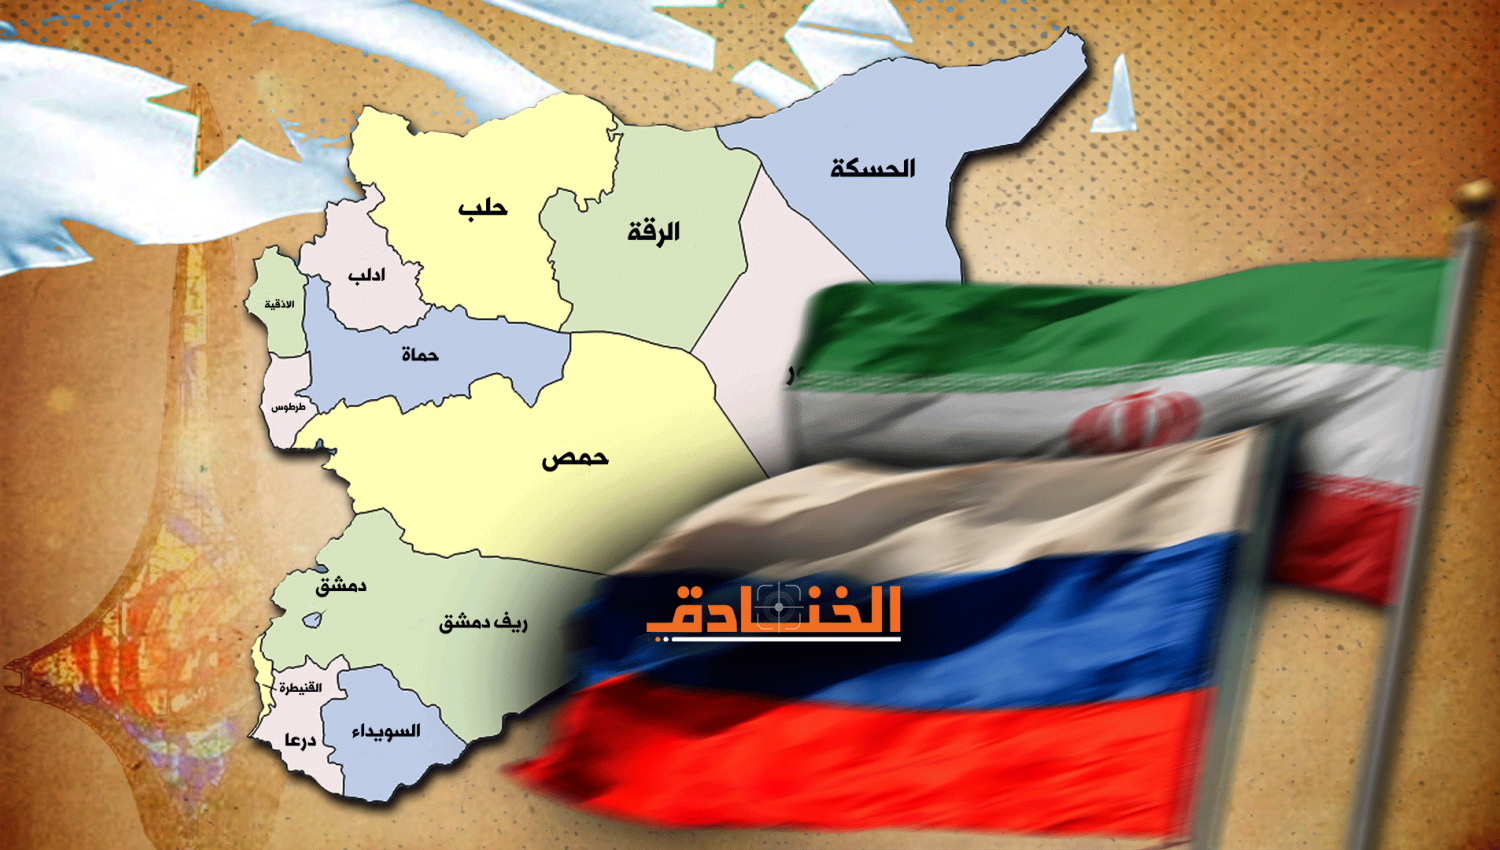 تبادل للأدوار بين روسيا وإيران في سوريا